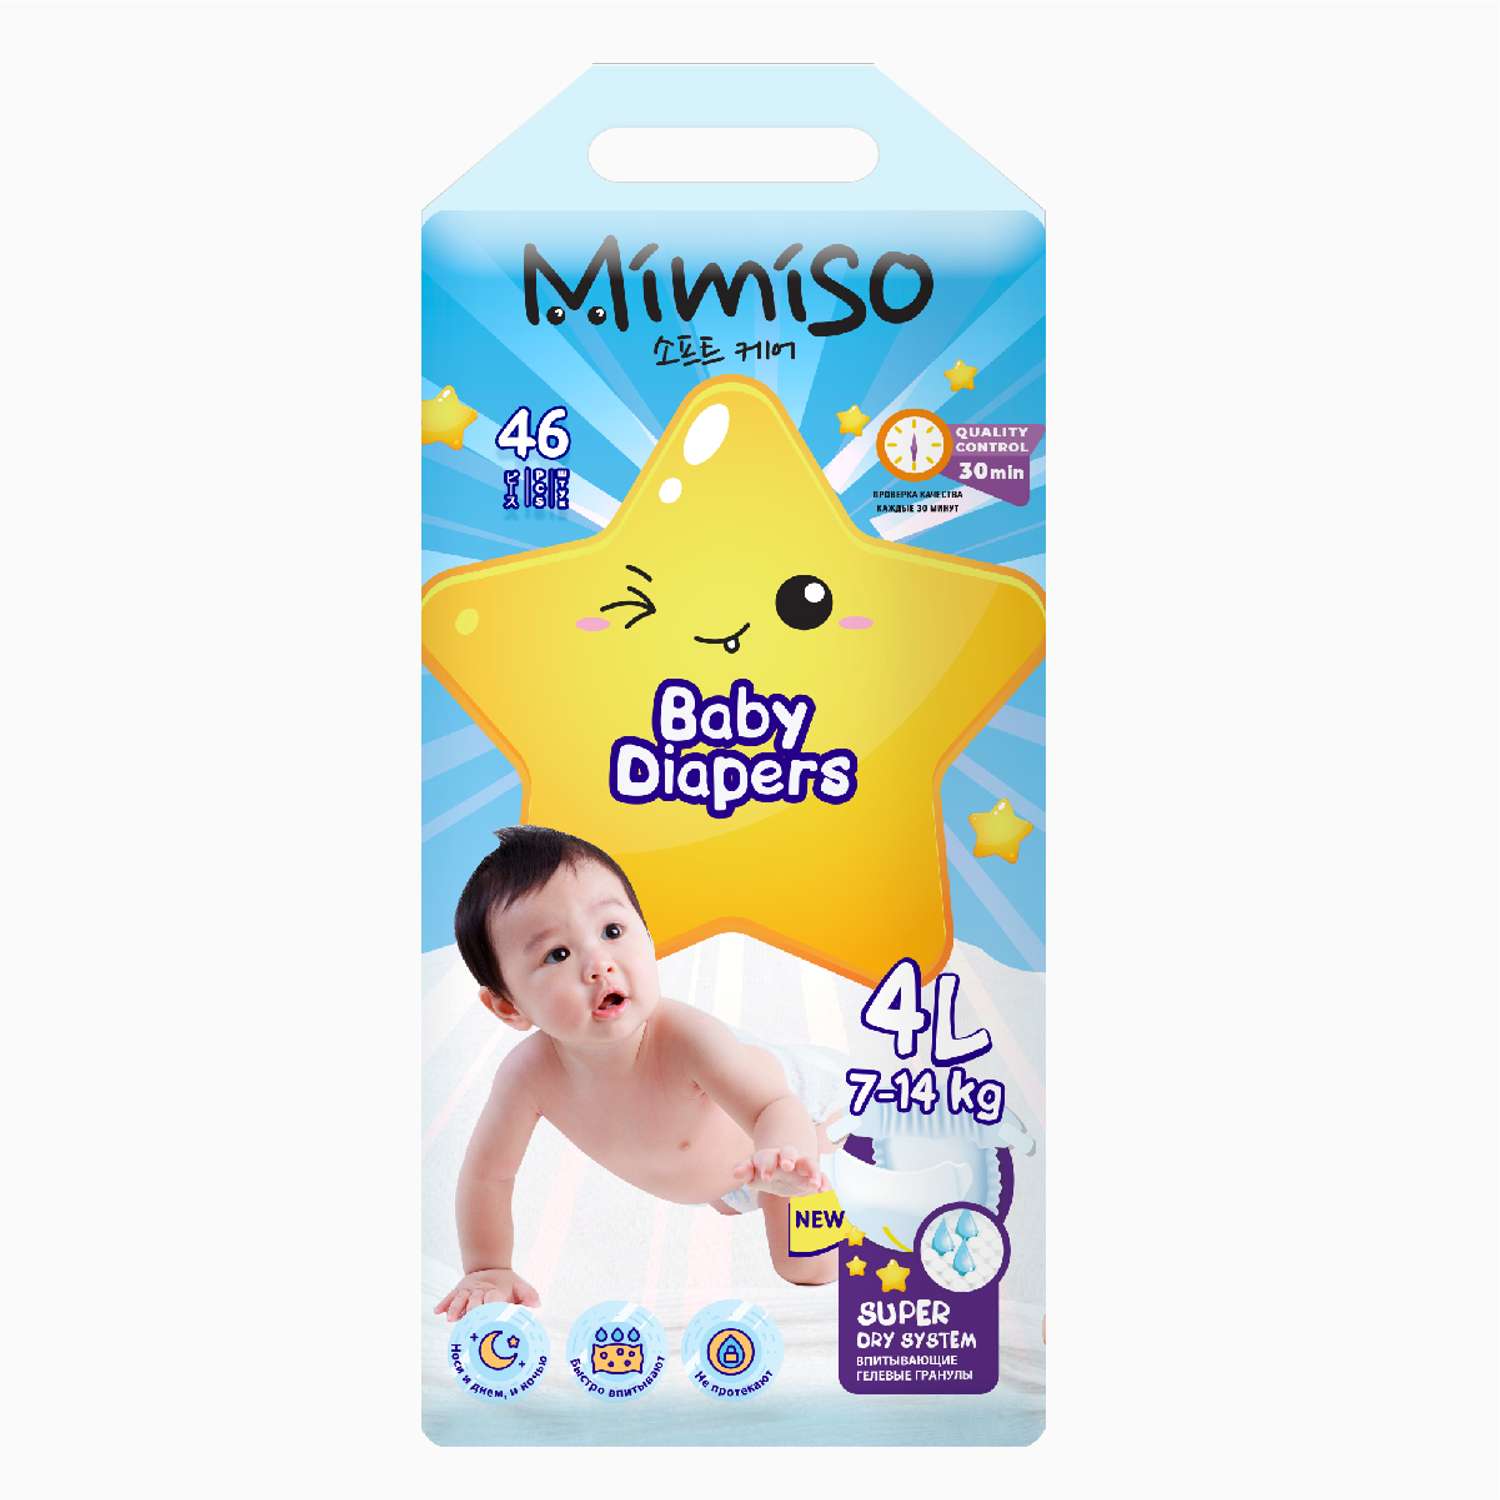 Подгузники Mimiso одноразовые для детей 4/L 7-14 кг 46шт - фото 2